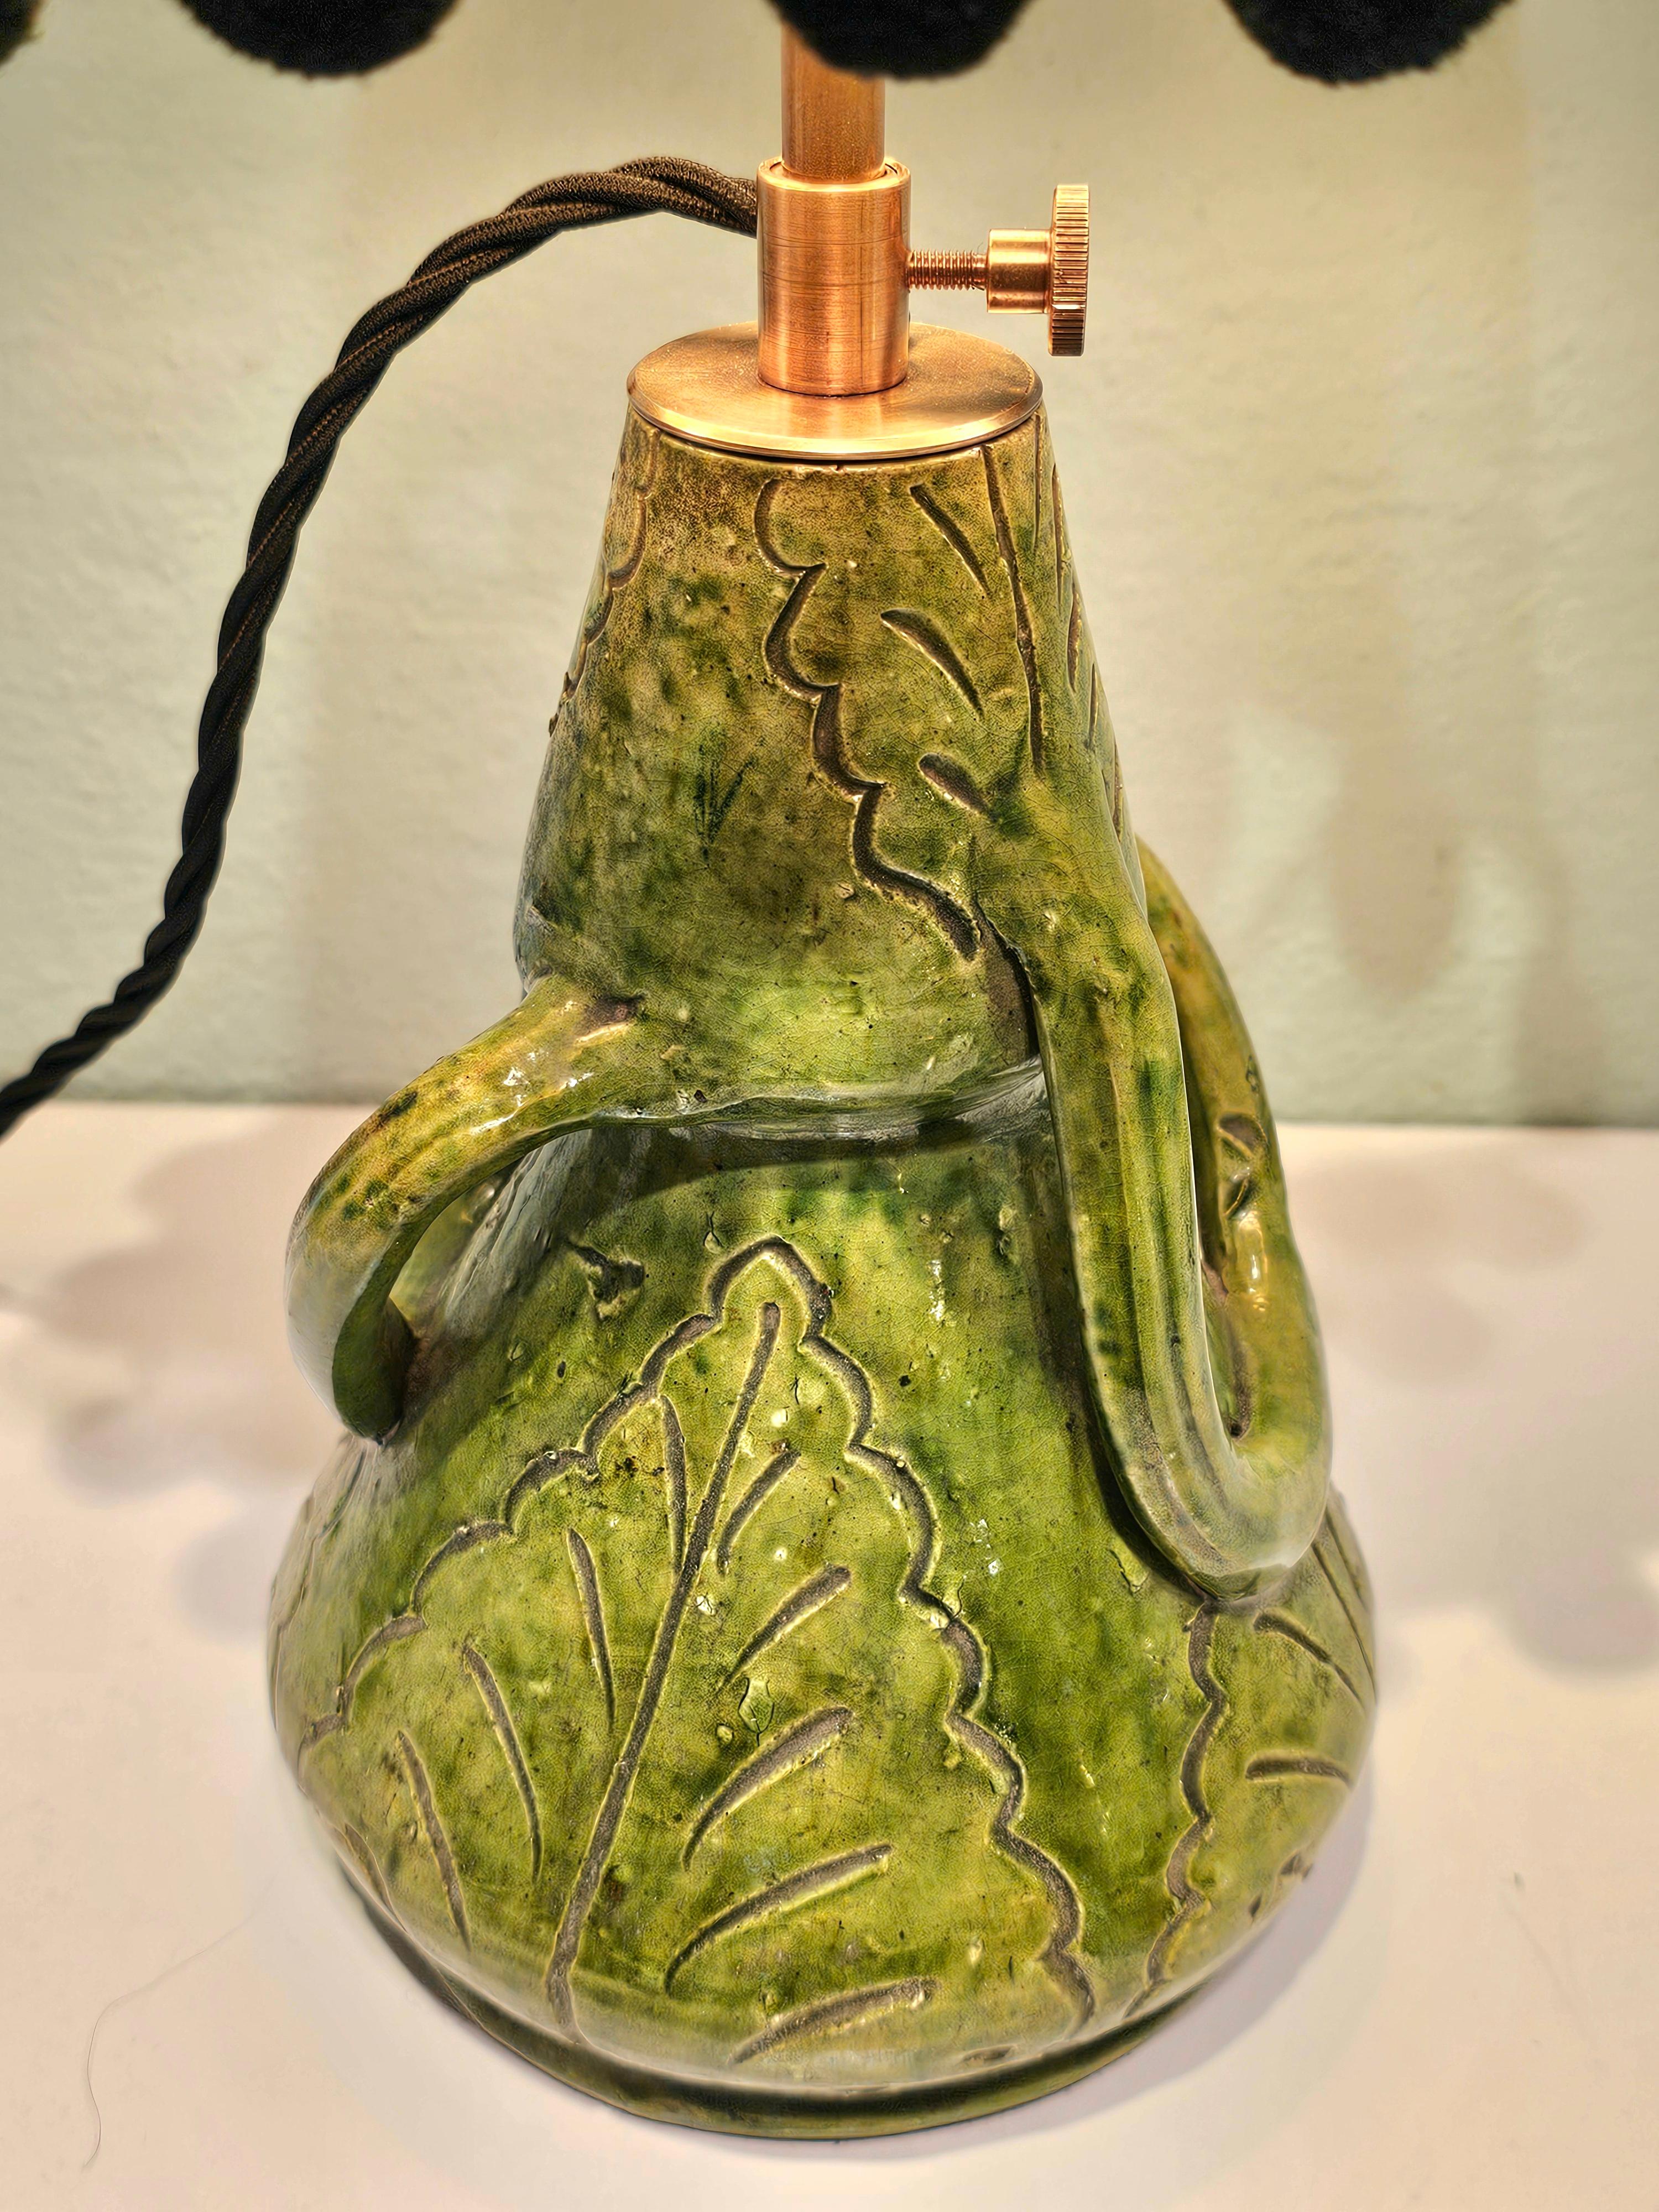 Kleine Tischlampe aus einer grün glasierten belgischen Töpferei von Brendens Aardewerk.
Mit einem handgefertigten Lampenschirm aus Stoff mit schwarzem Pompon. Innen vergoldet.
Die Höhe ist einstellbar